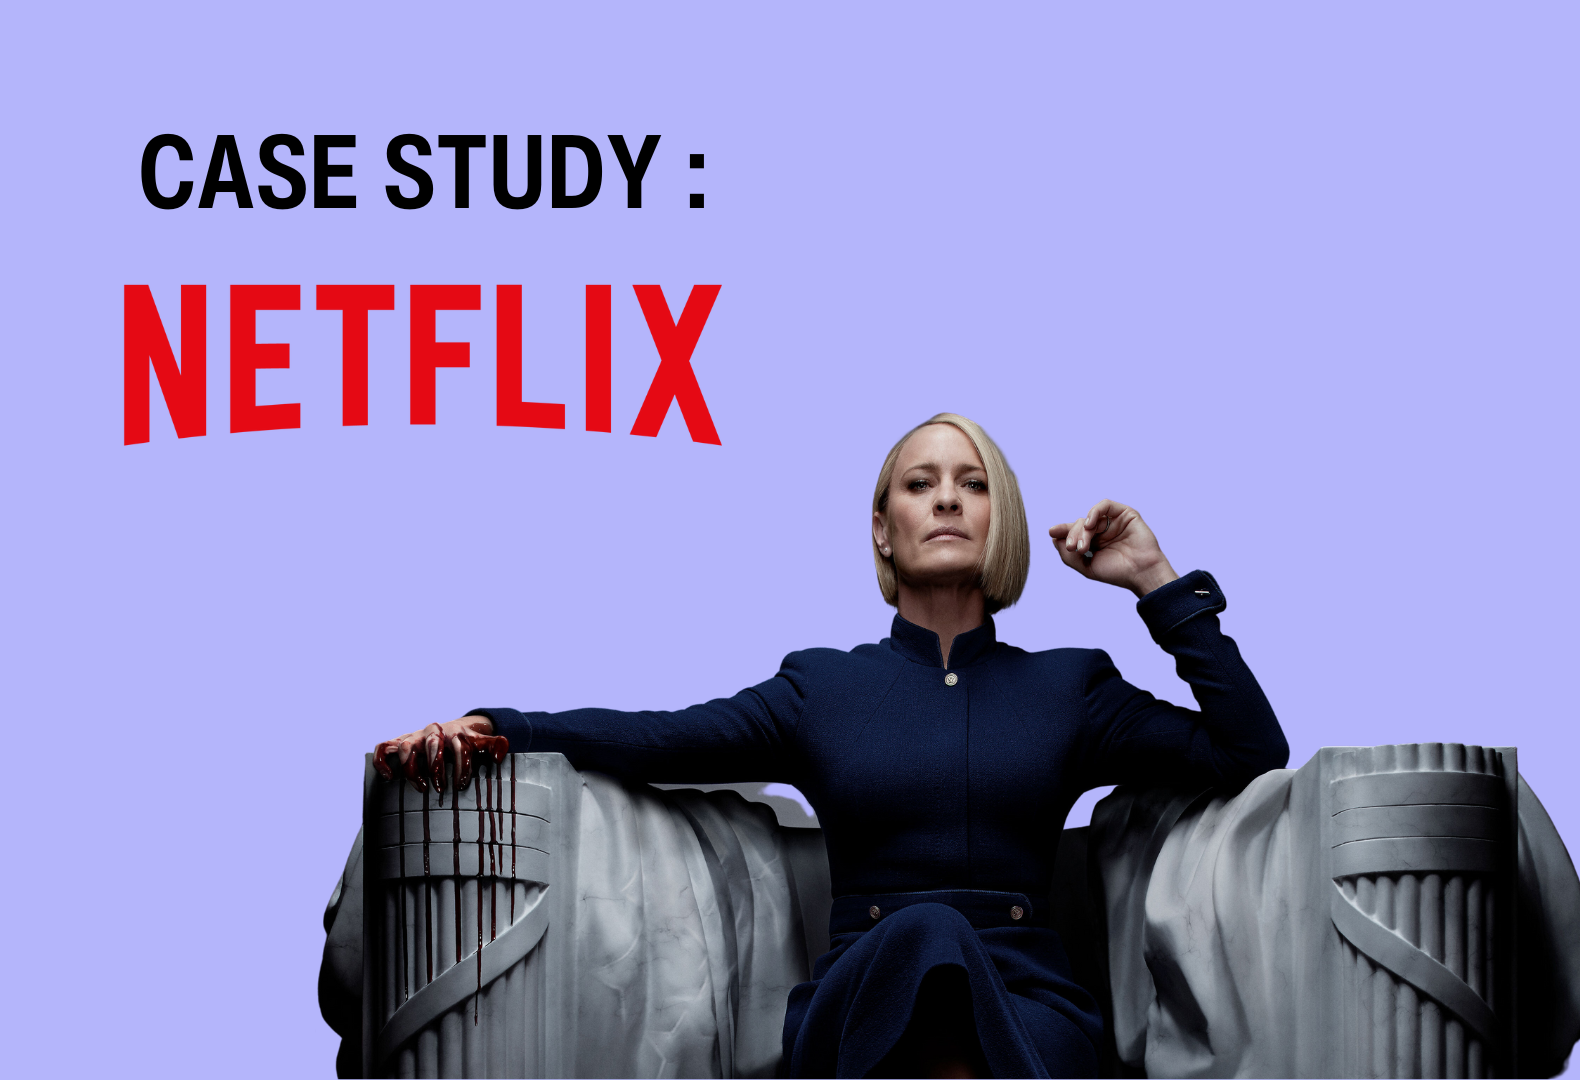 House of cards de Netflix pour étude de cas sur le modèle d'abonnement de Netflix